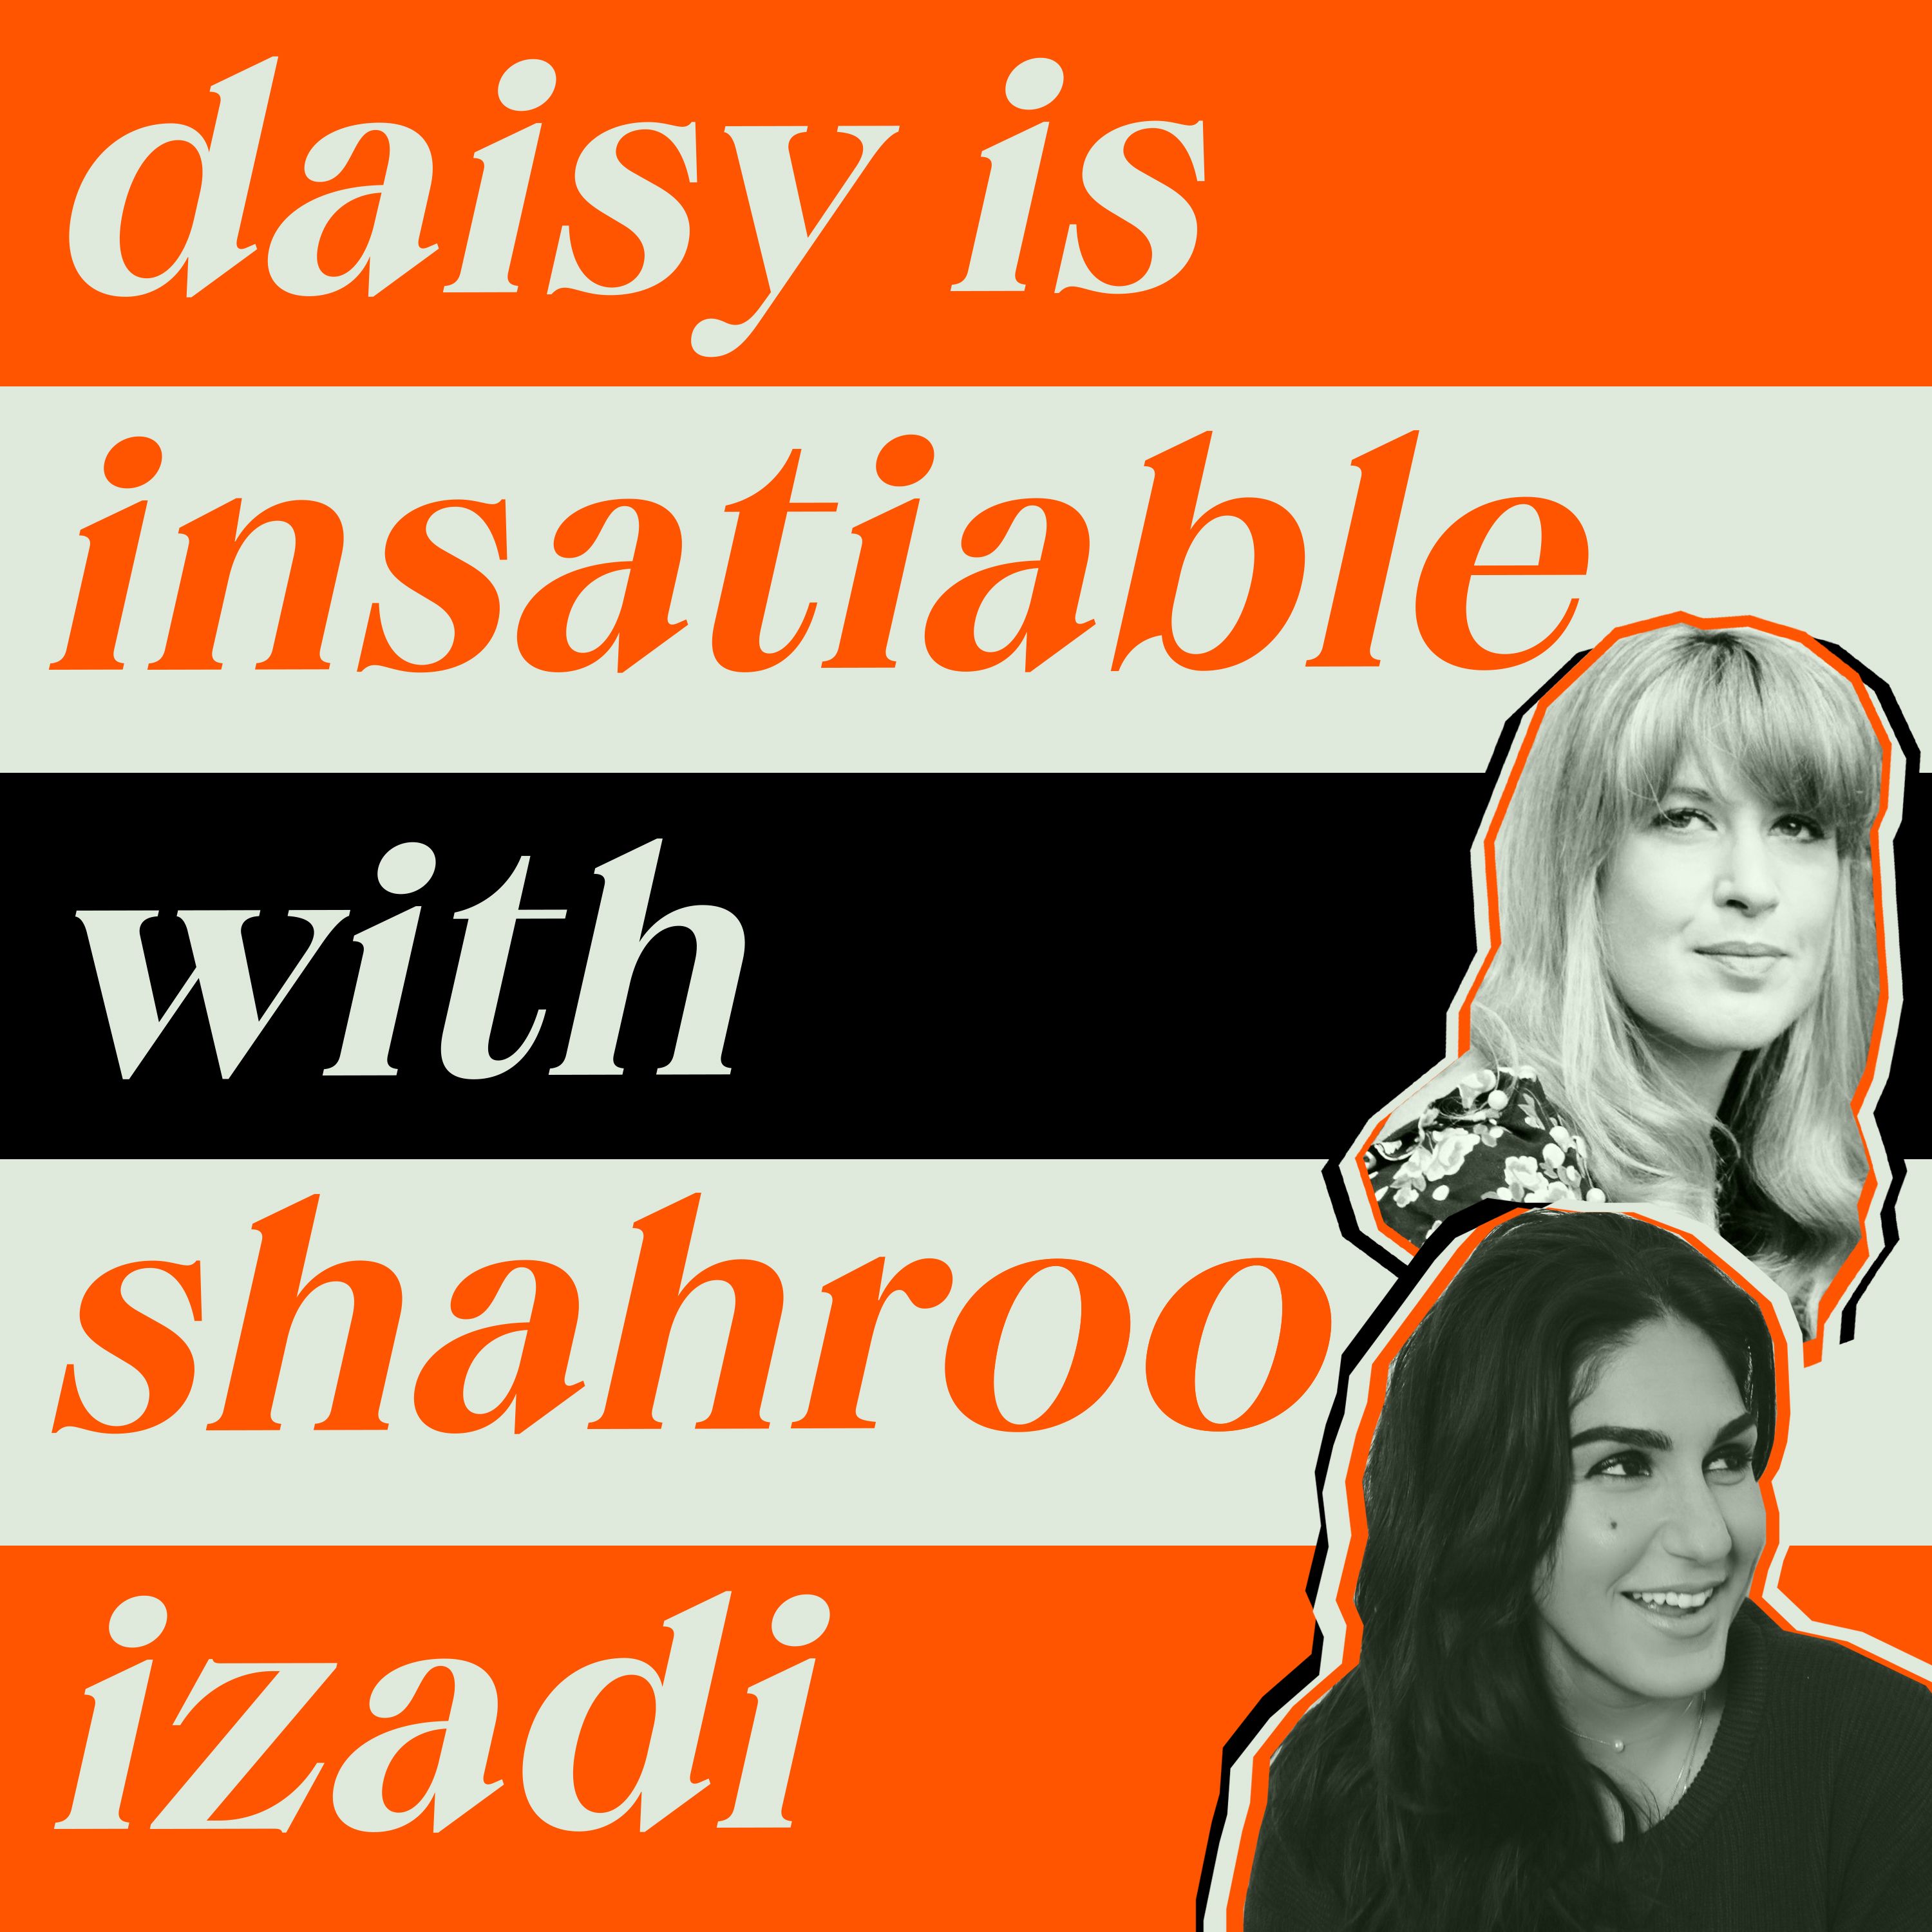 Daisy is Insatiable with Shahroo Izadi